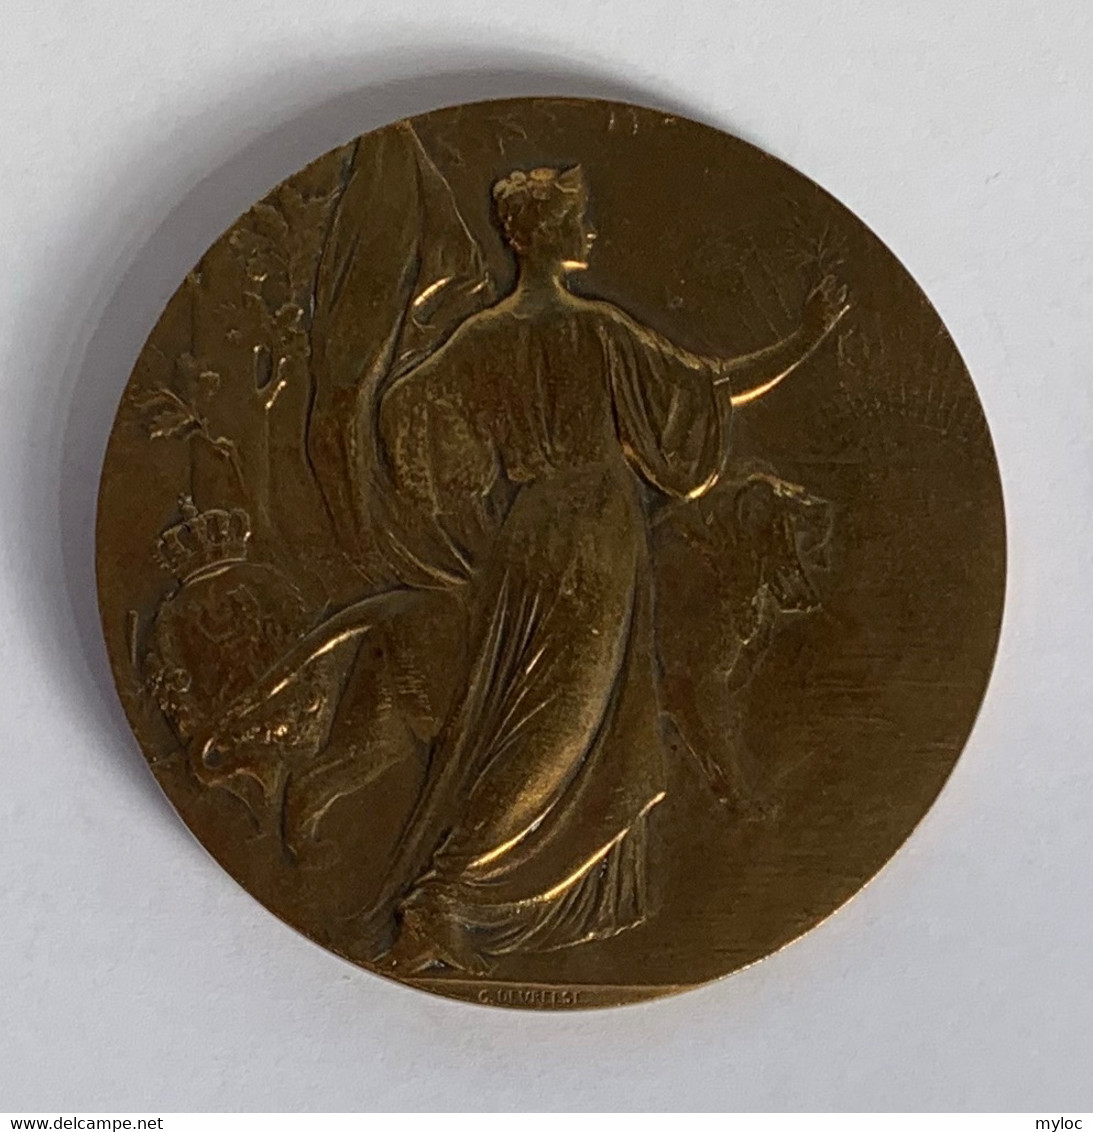 Médaille Bronze. Roi Léopold II. G. Devreese - Professionnels / De Société